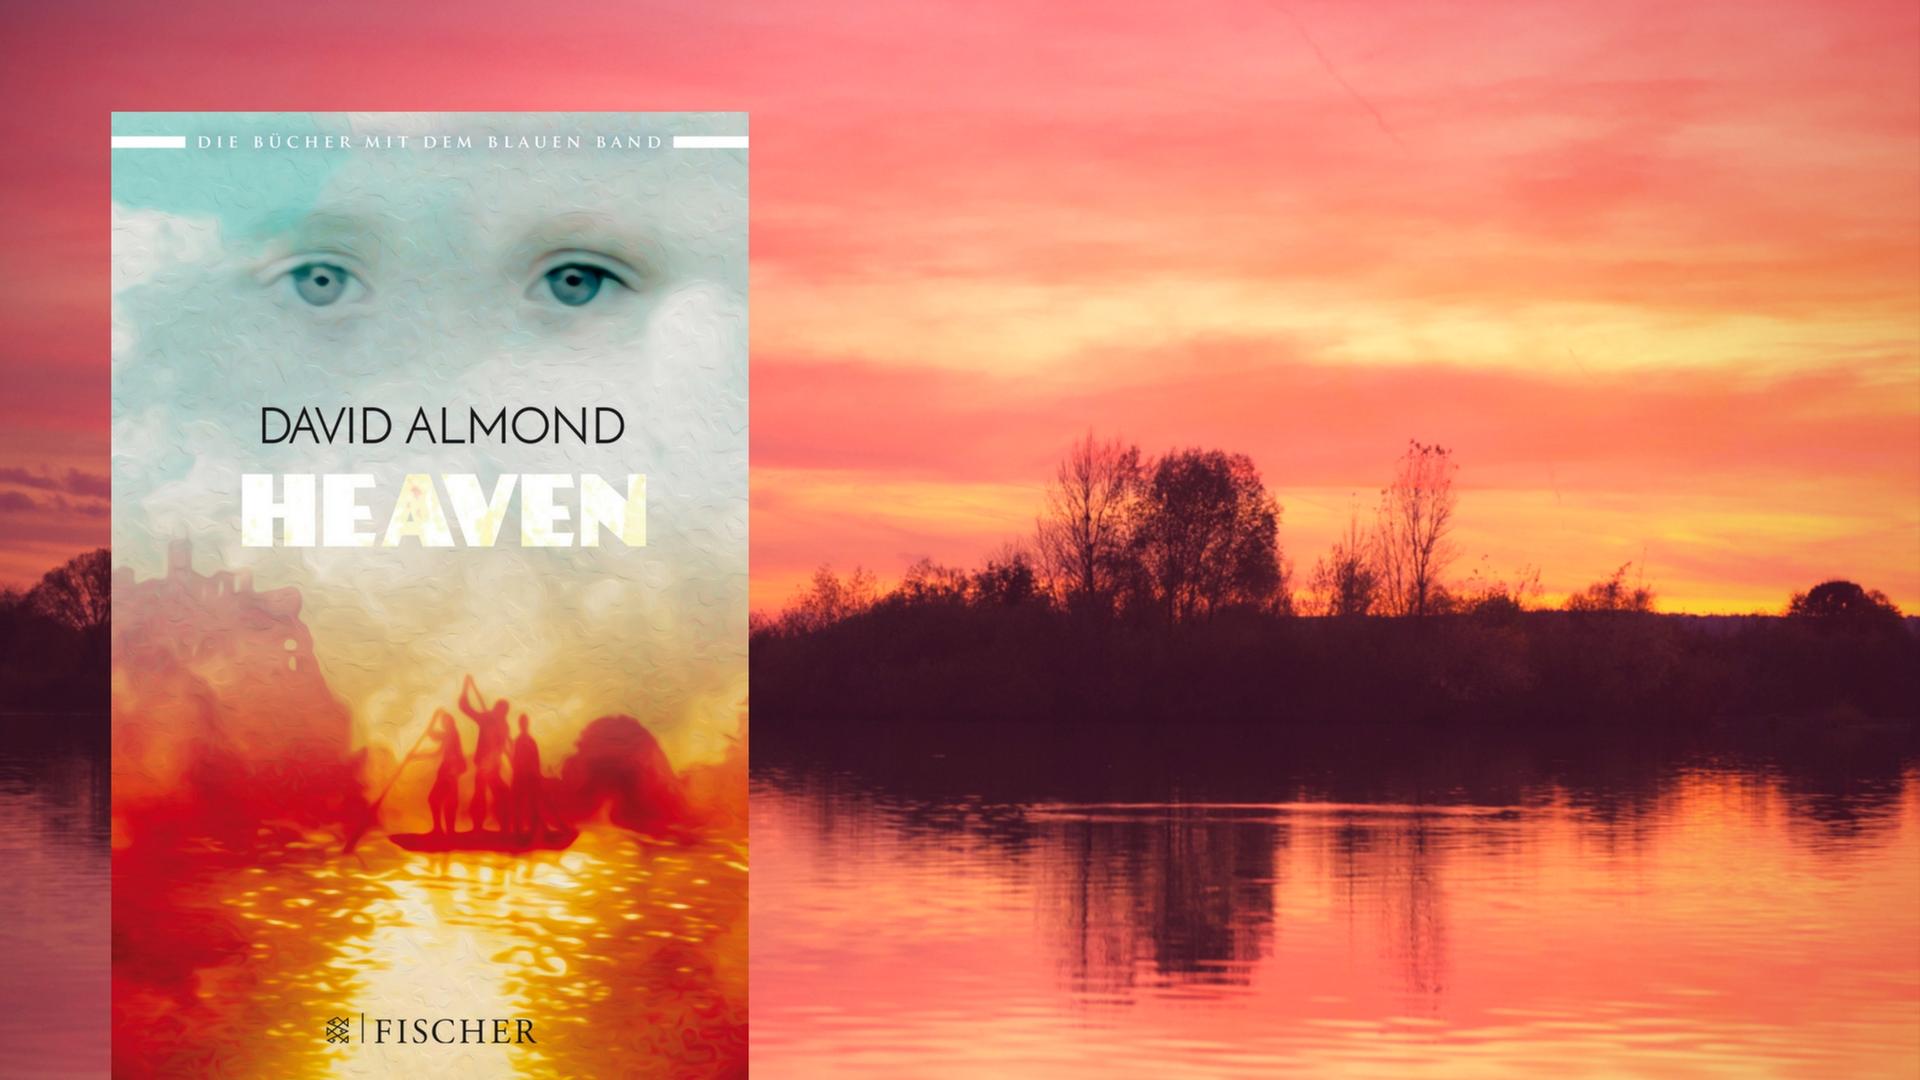 David Almond: "Heaven"